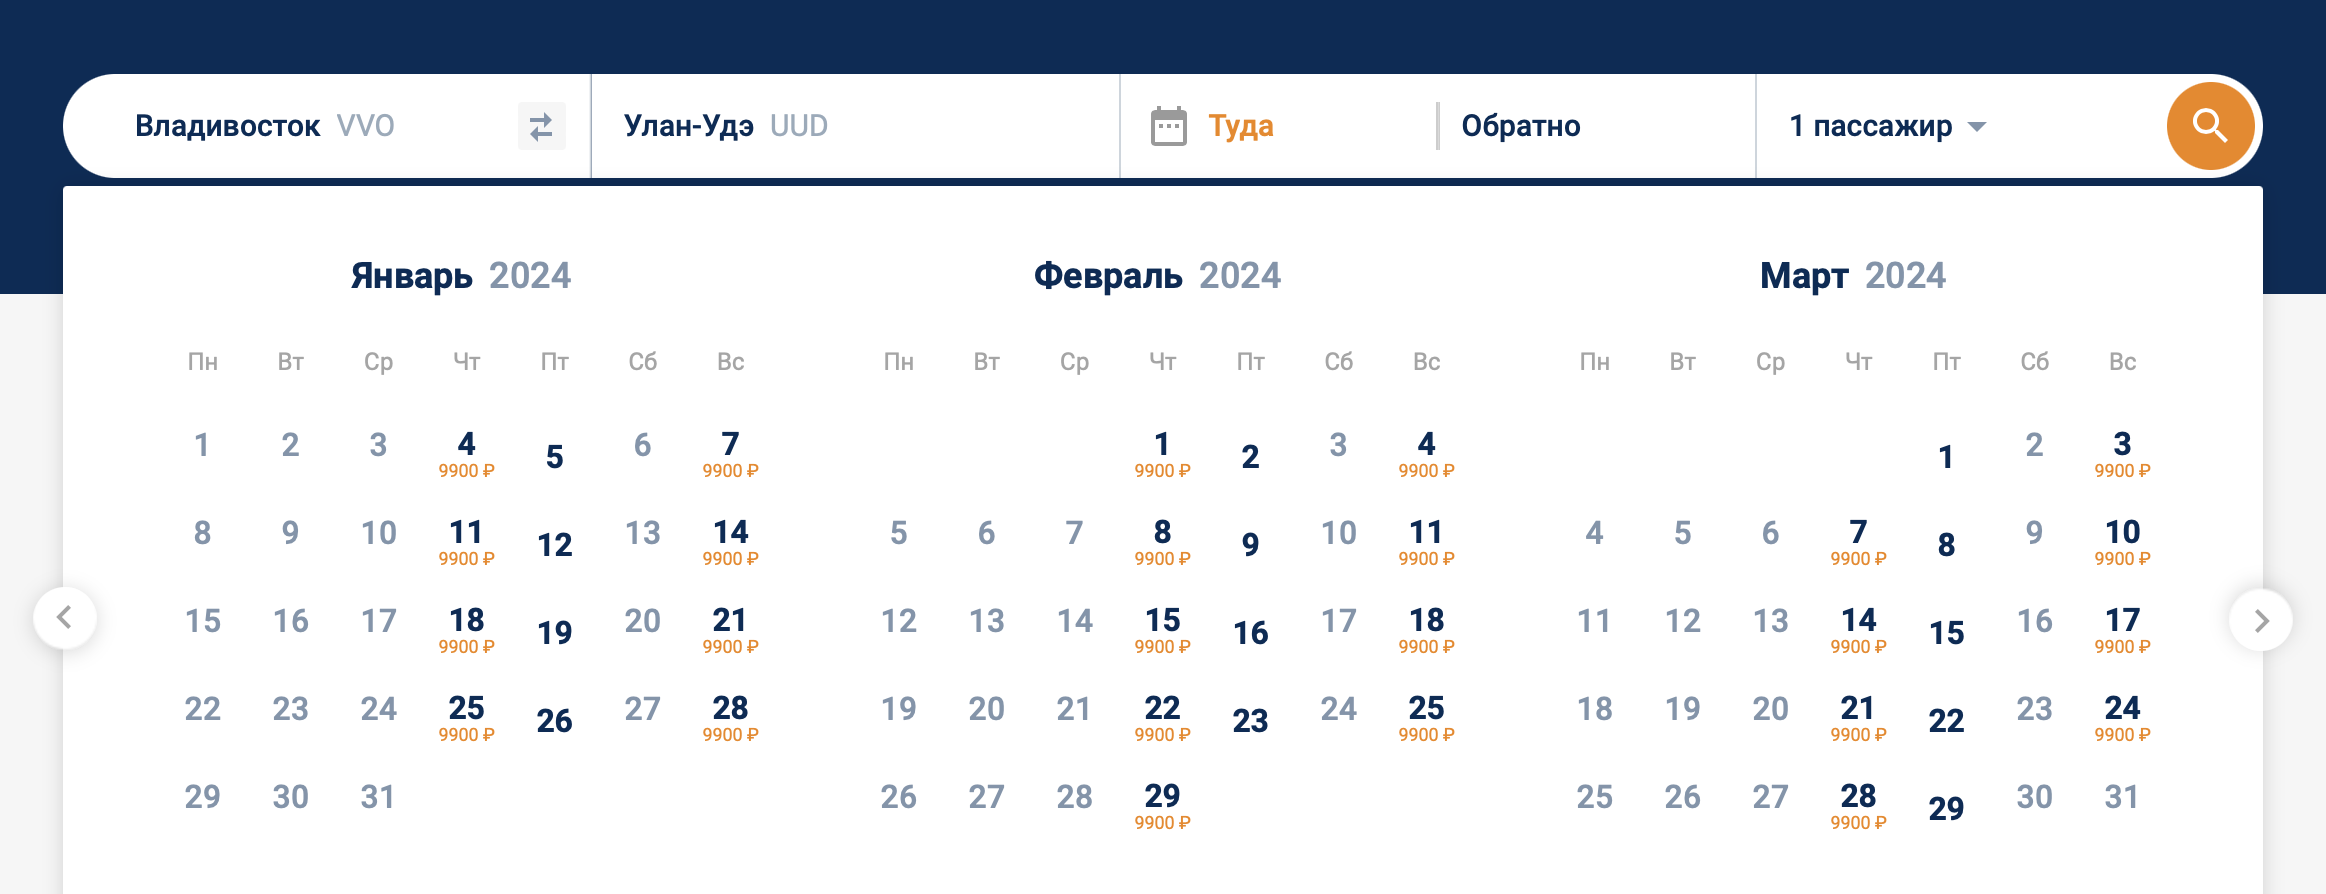 Стоимость перелета из Владивостока в Улан-Удэ по субсидированному тарифу — 9900 ₽. Она не меняется в зависимости от даты вылета. Источник: flyaurora.ru